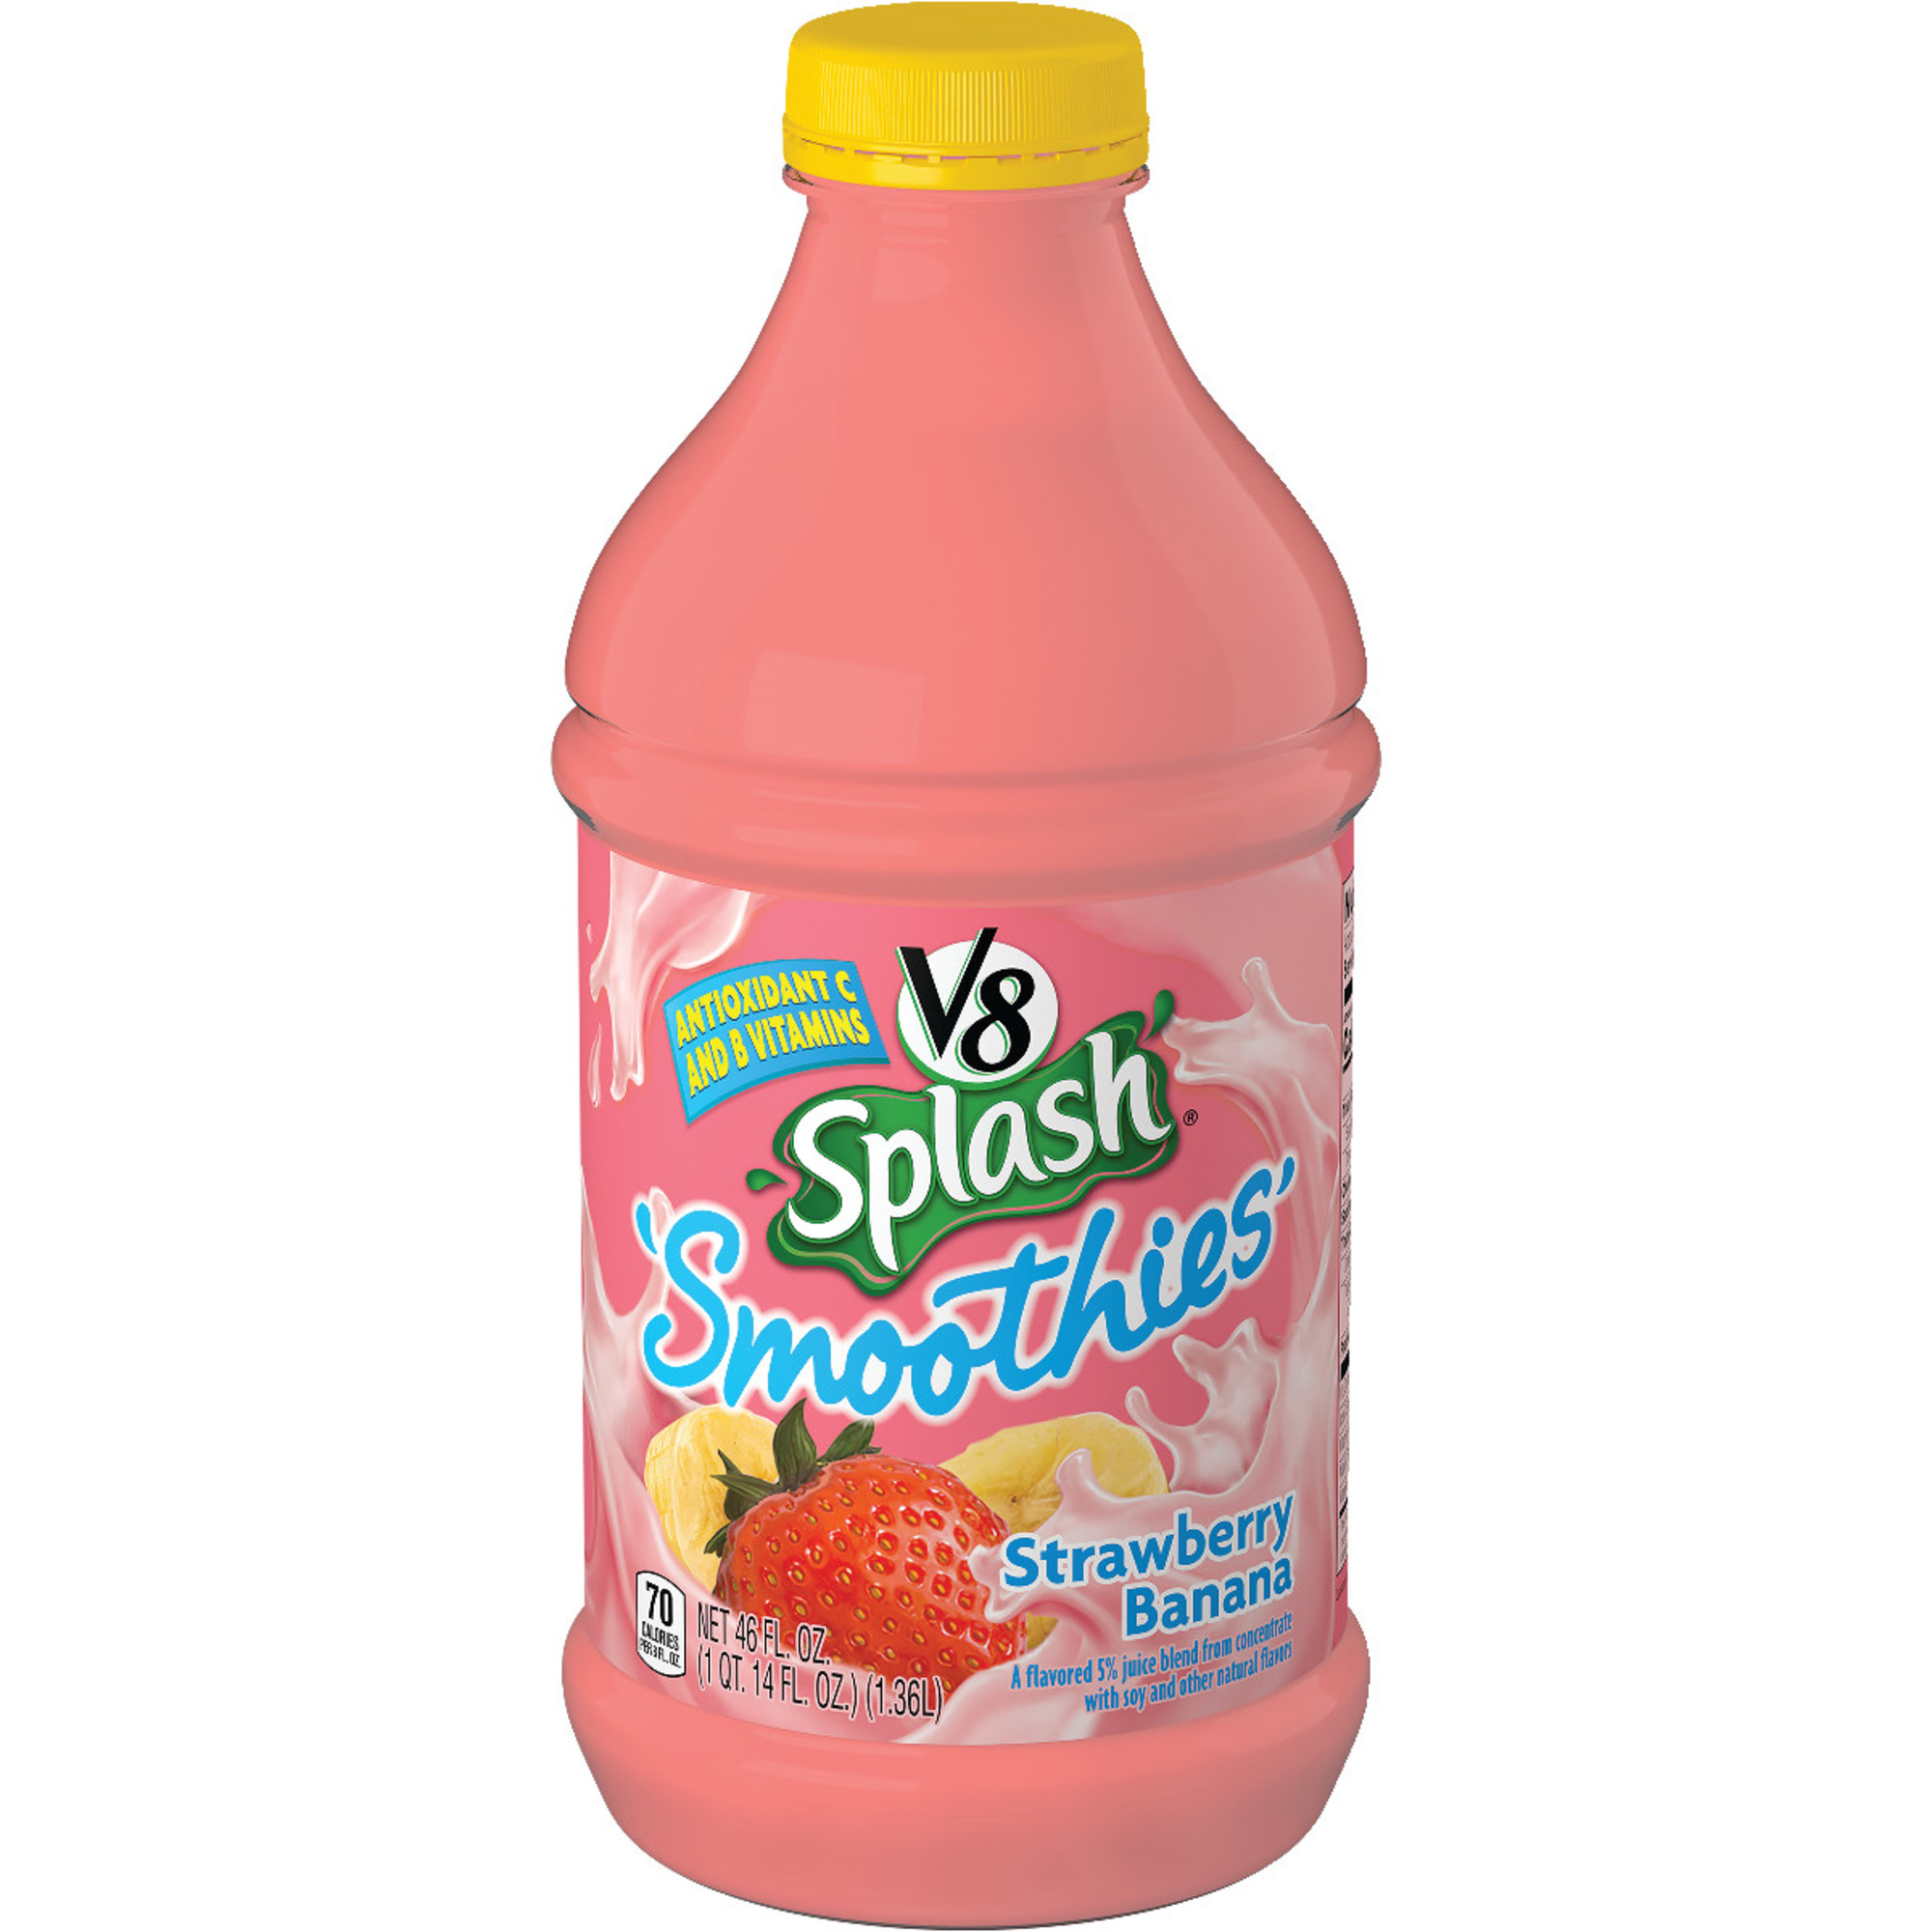 V8 Splash Smoothies Strawberry Banana, 46 oz. - image 1 of 6